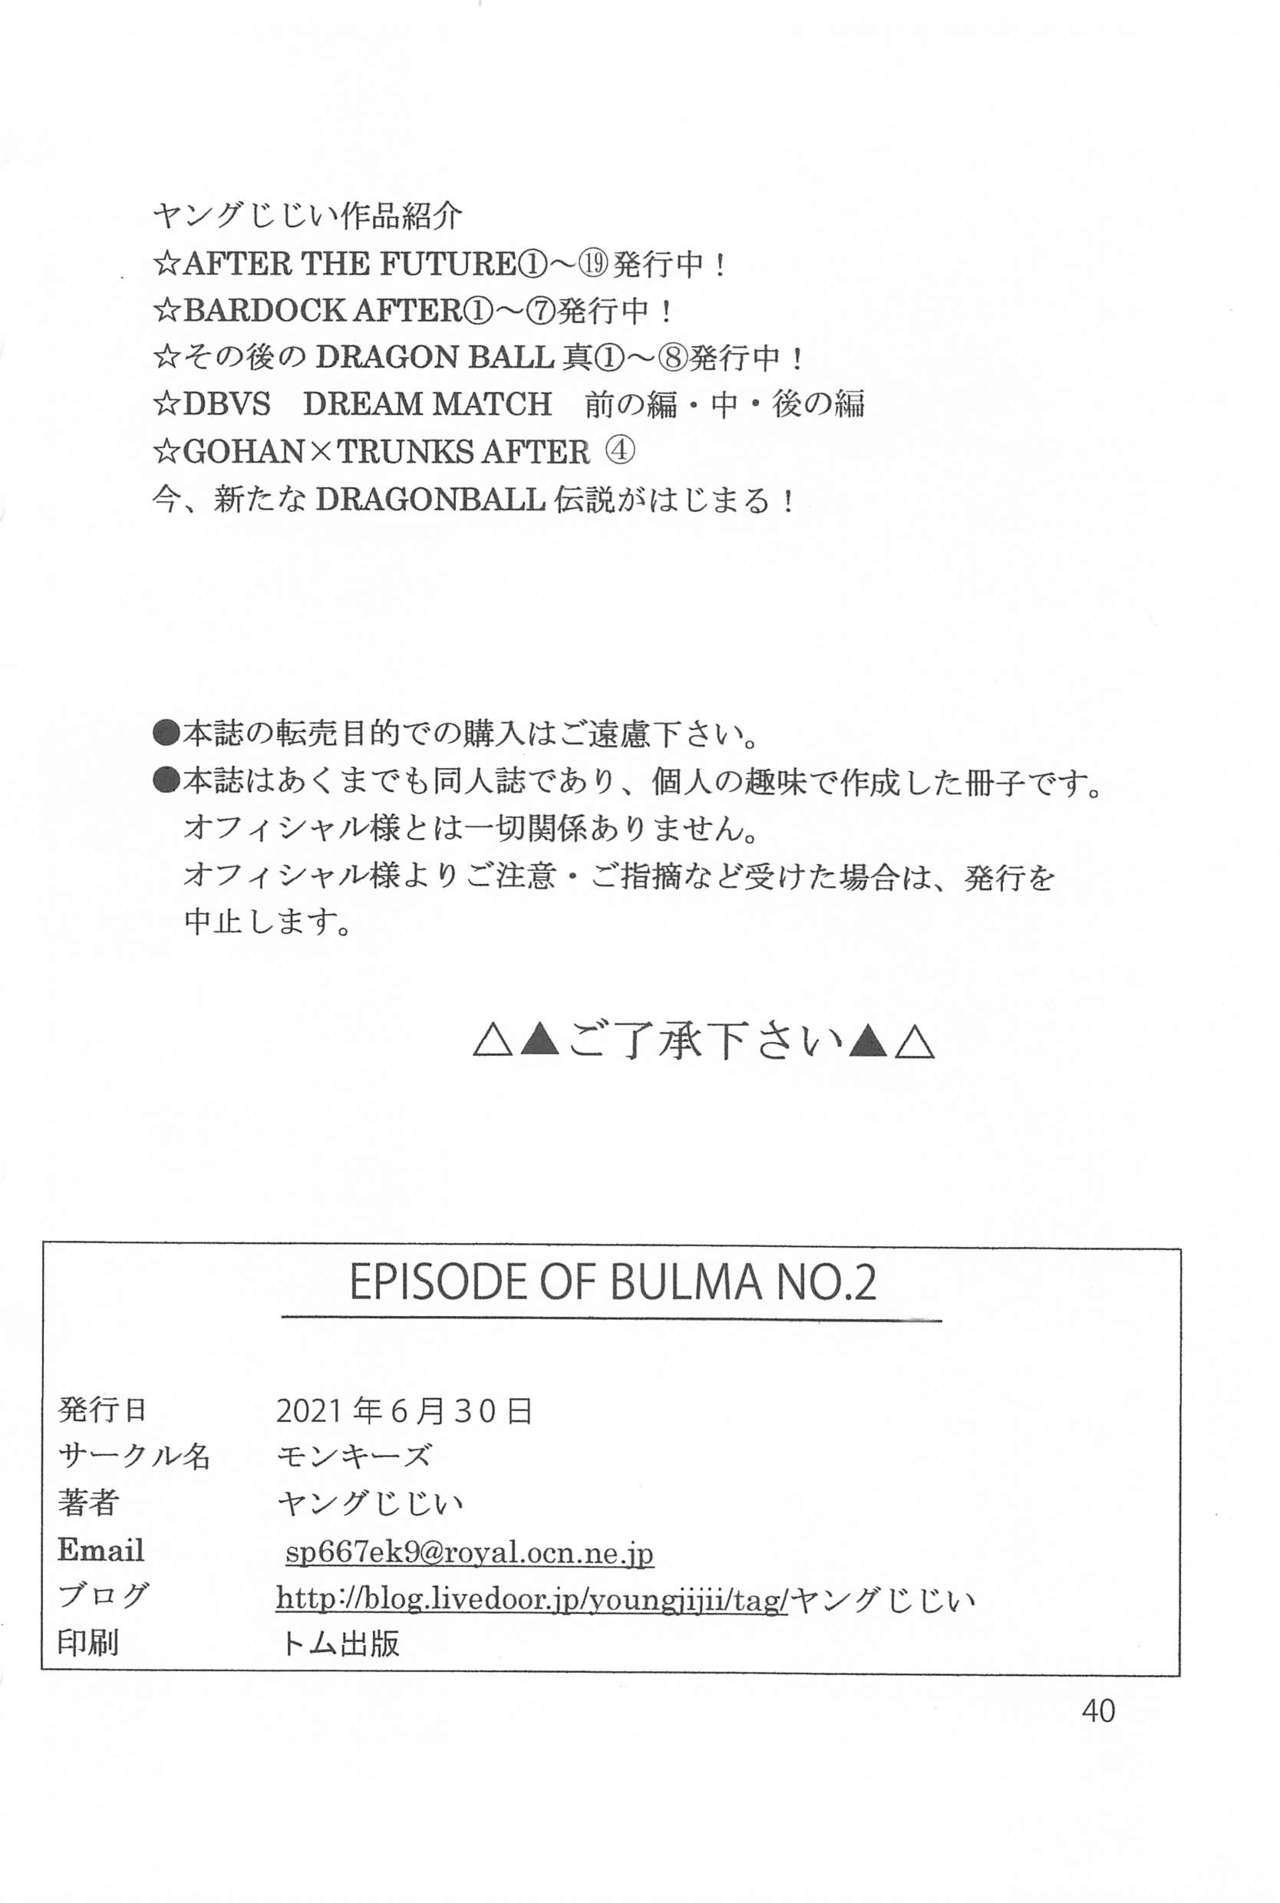 [モンキーズ (ヤングじじい)] EPISODE OF BULMA NO.2 (ドラゴンボール)